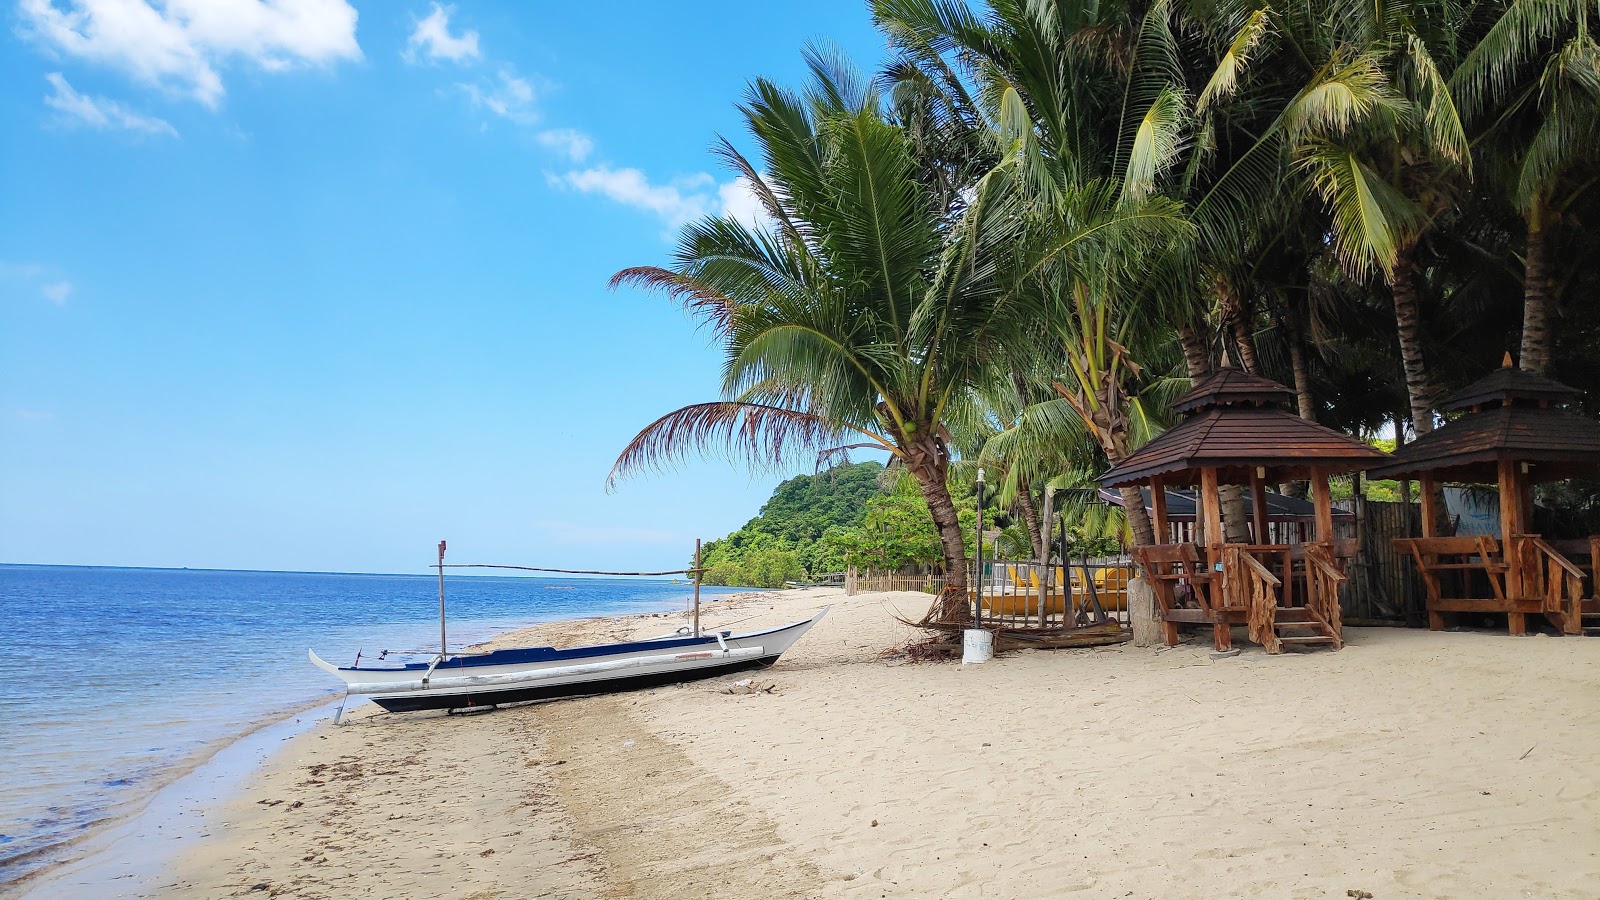 Foto di Lian batangas beach - luogo popolare tra gli intenditori del relax